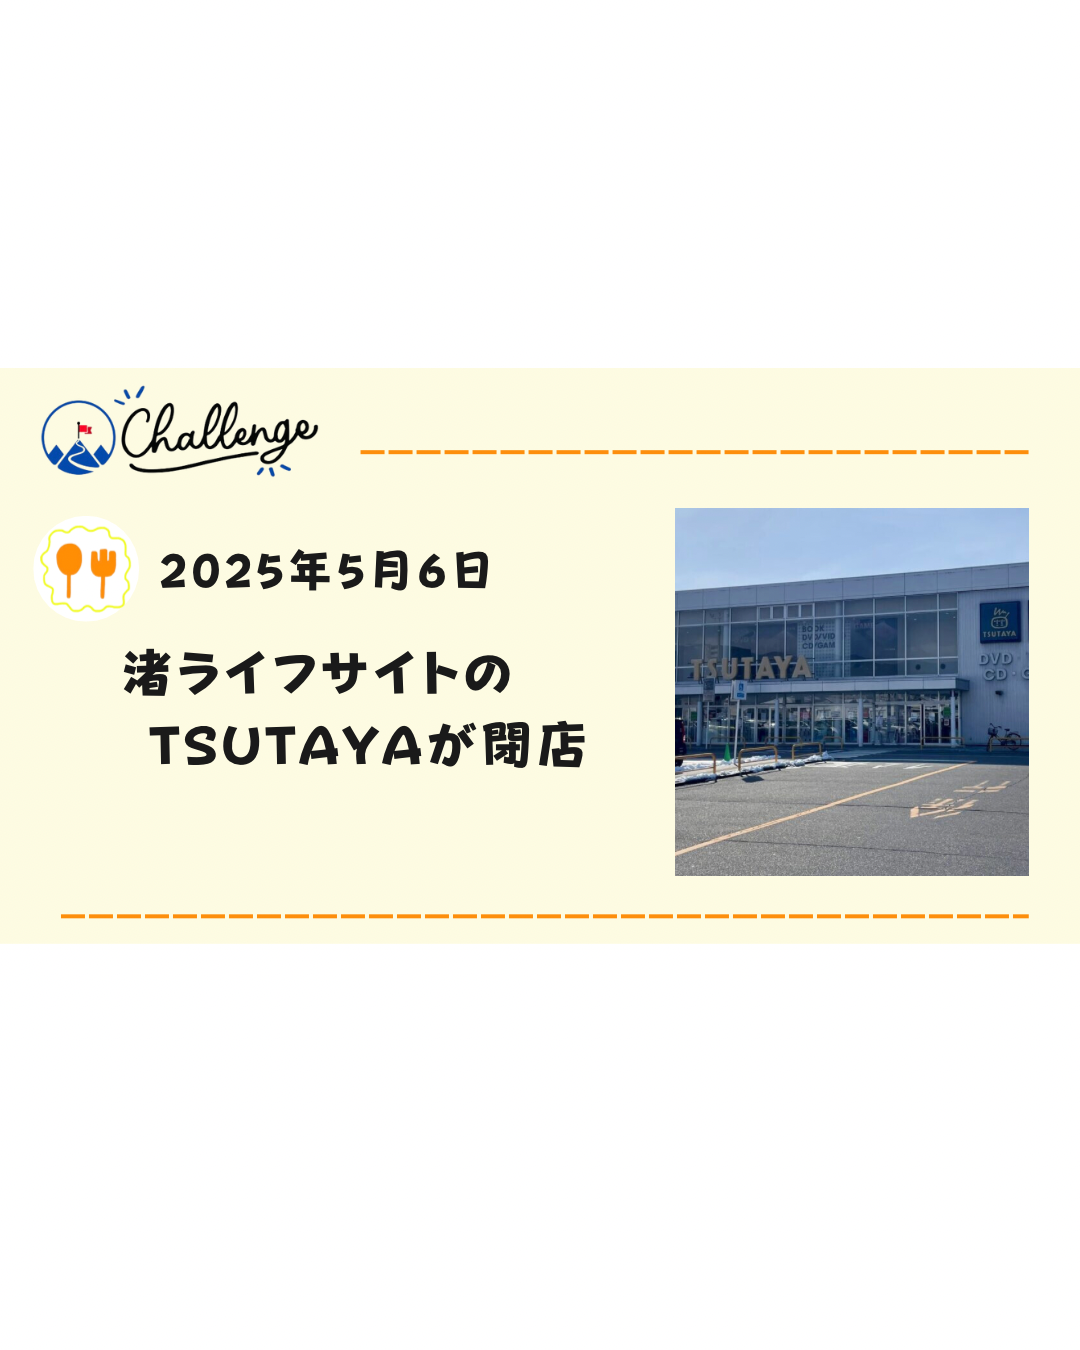 【5月6日閉店】なぎさライフサイトTSUTAYA北松本店が閉店